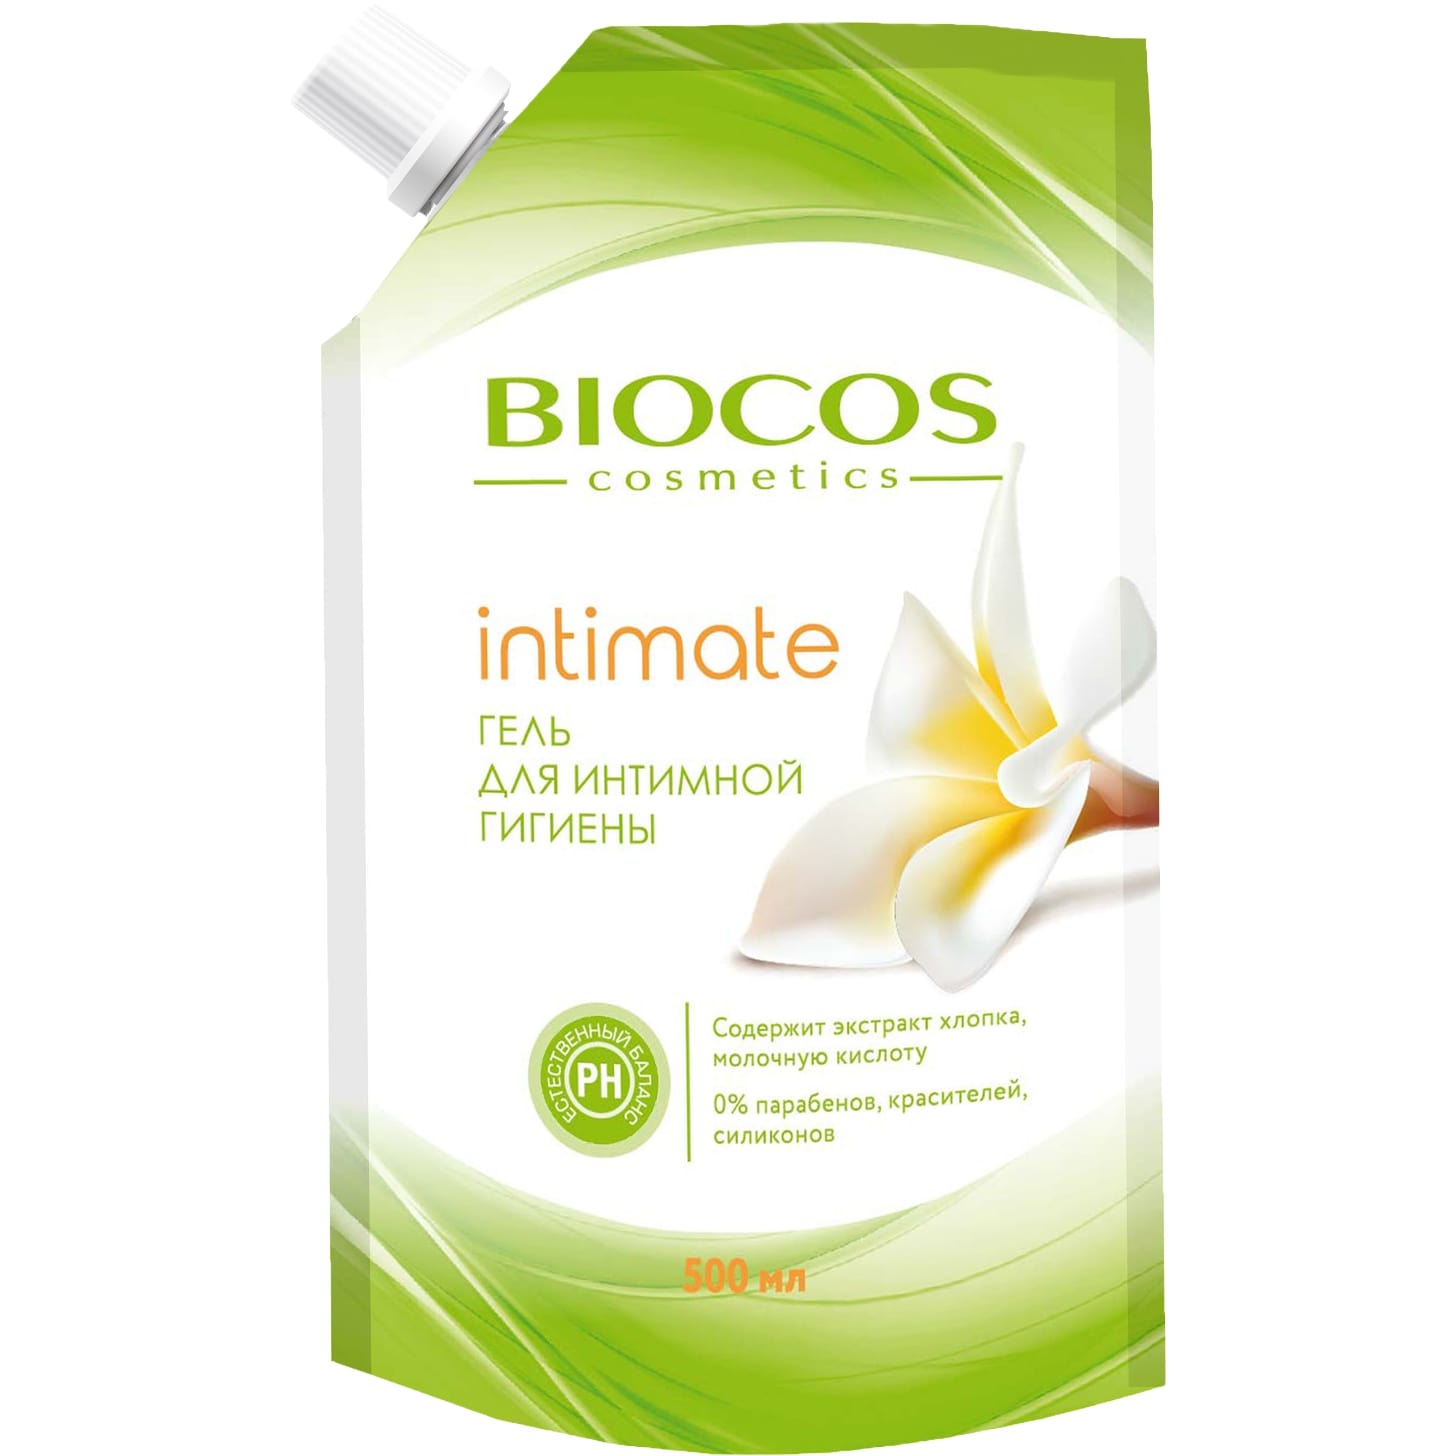 Гель для интимной гигиены BioCos intimate с экстрактом хлопка и молочной кислотой 500 мл intimate пенка для интимной гигиены для очень чувствительной кожи 175 мл